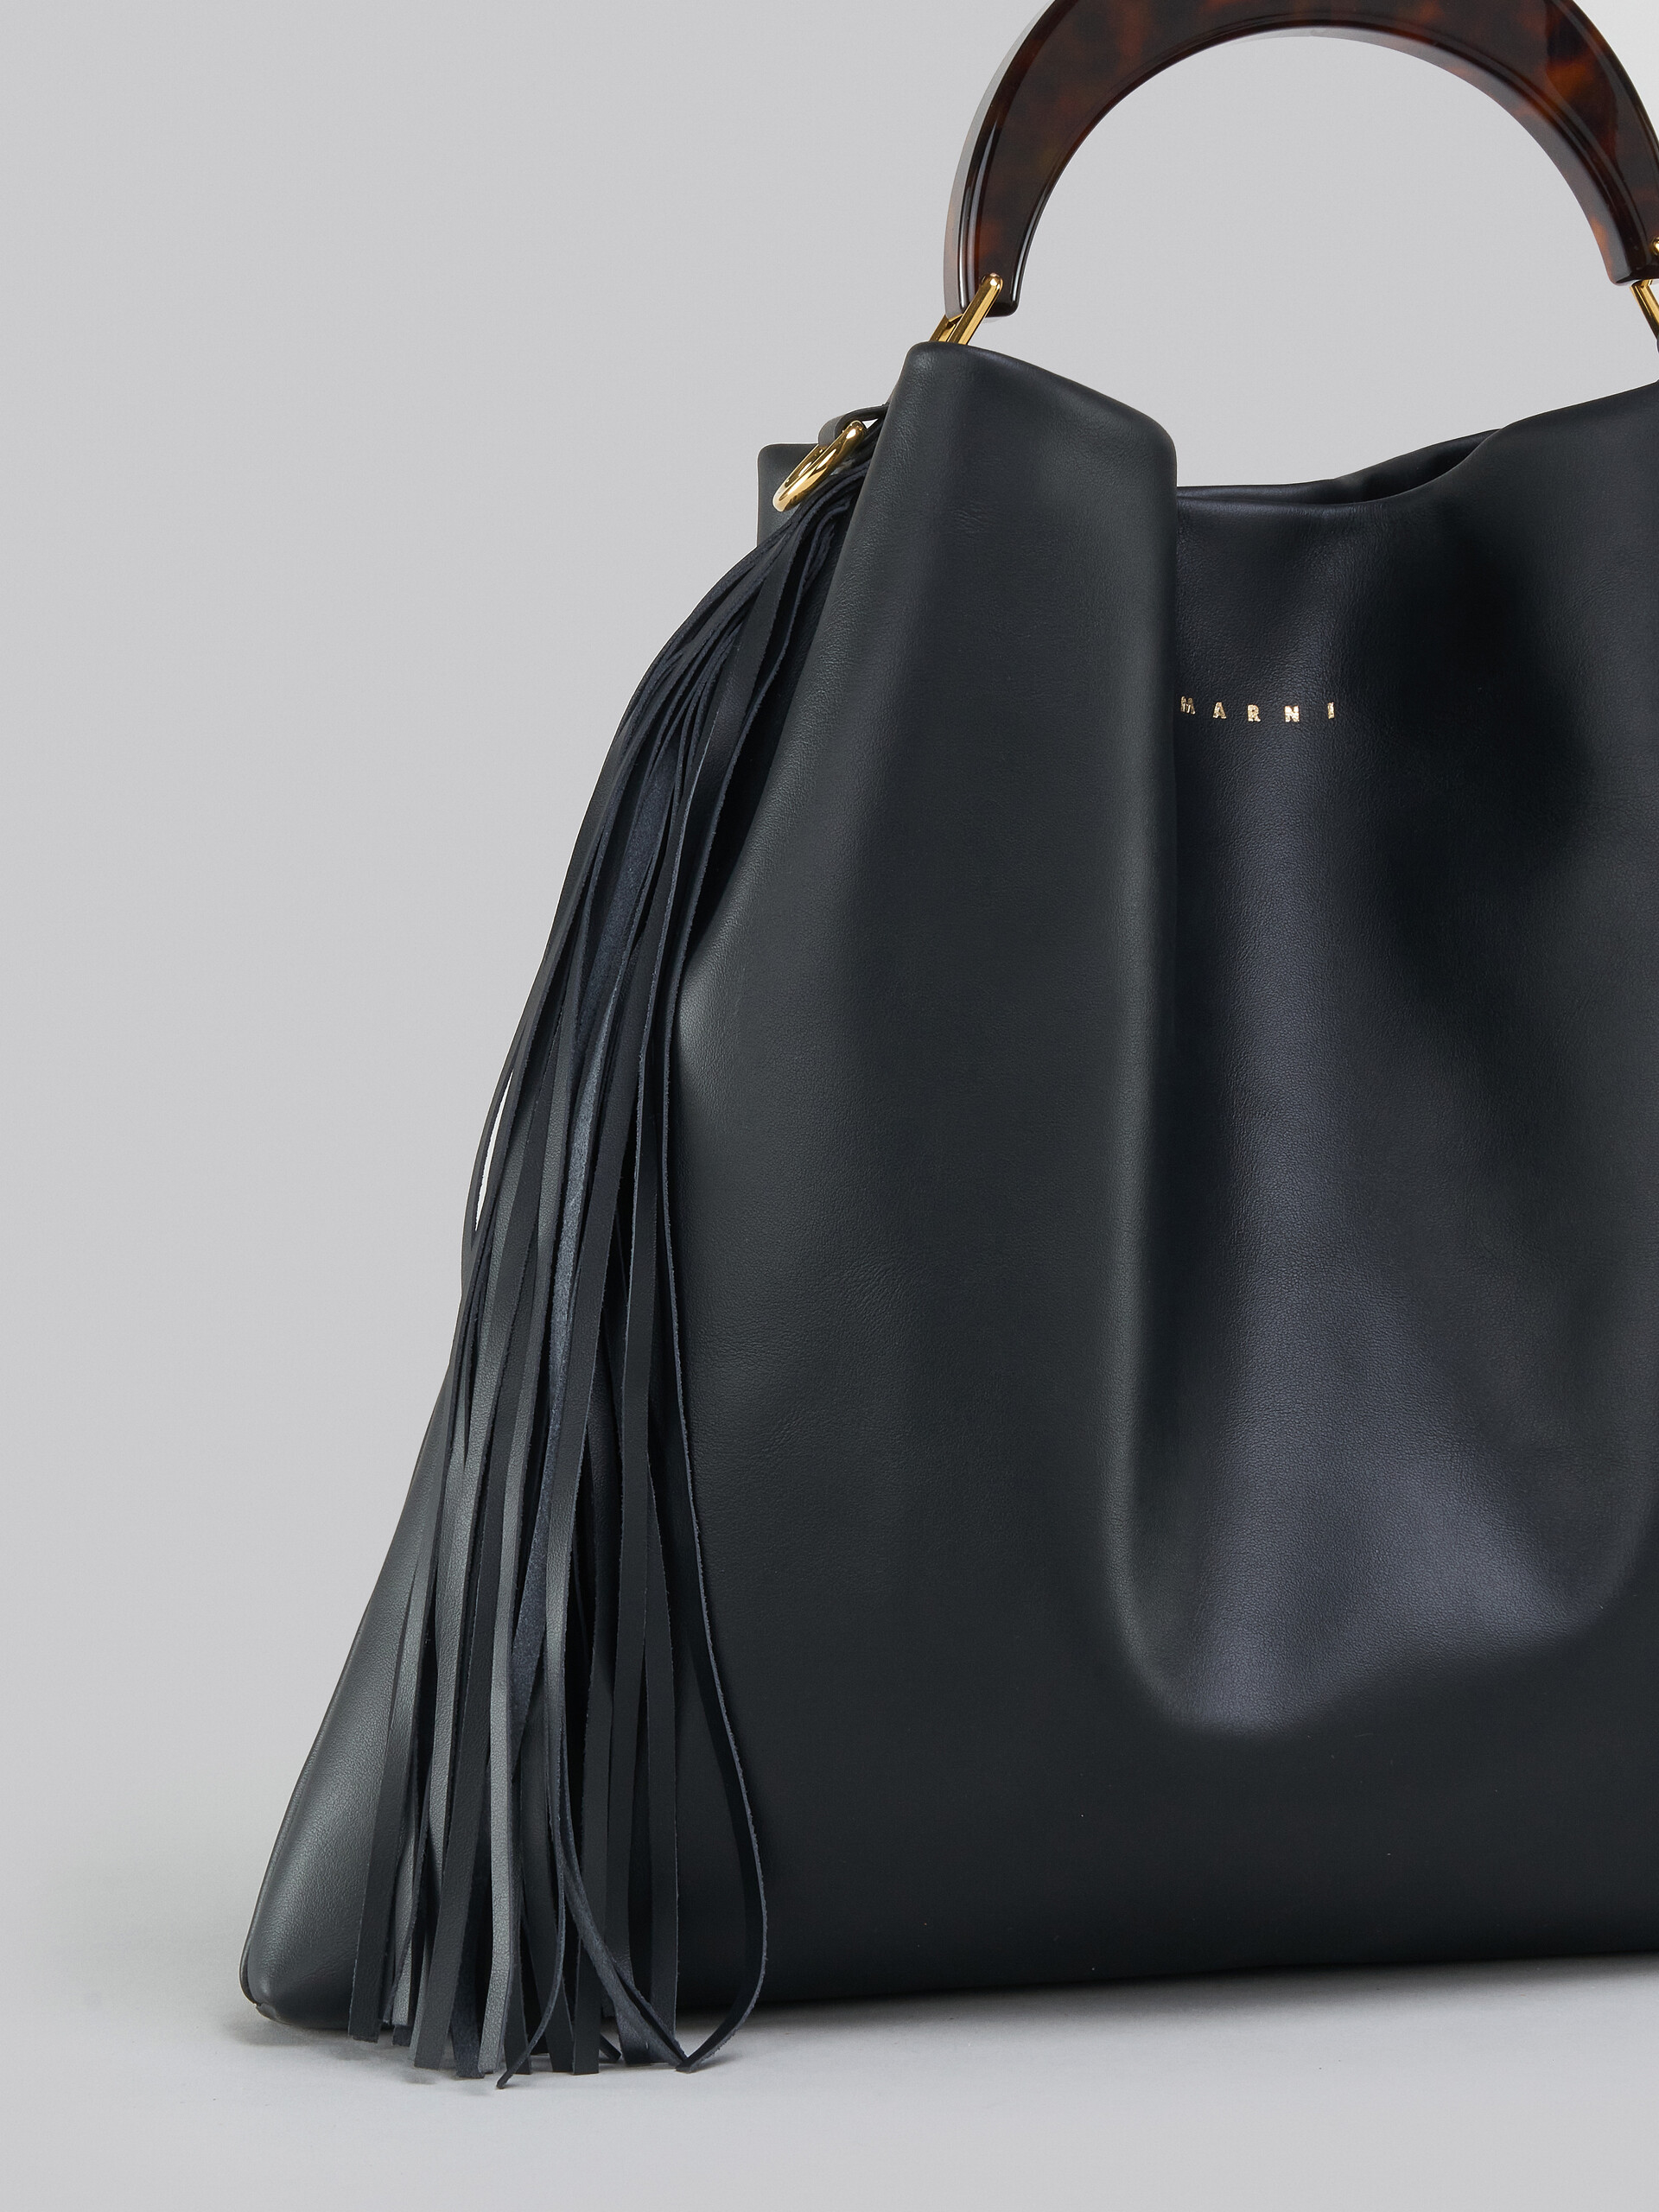 Venice Medium Bag in black leather with fringes - Shoulder Bag - Image 4